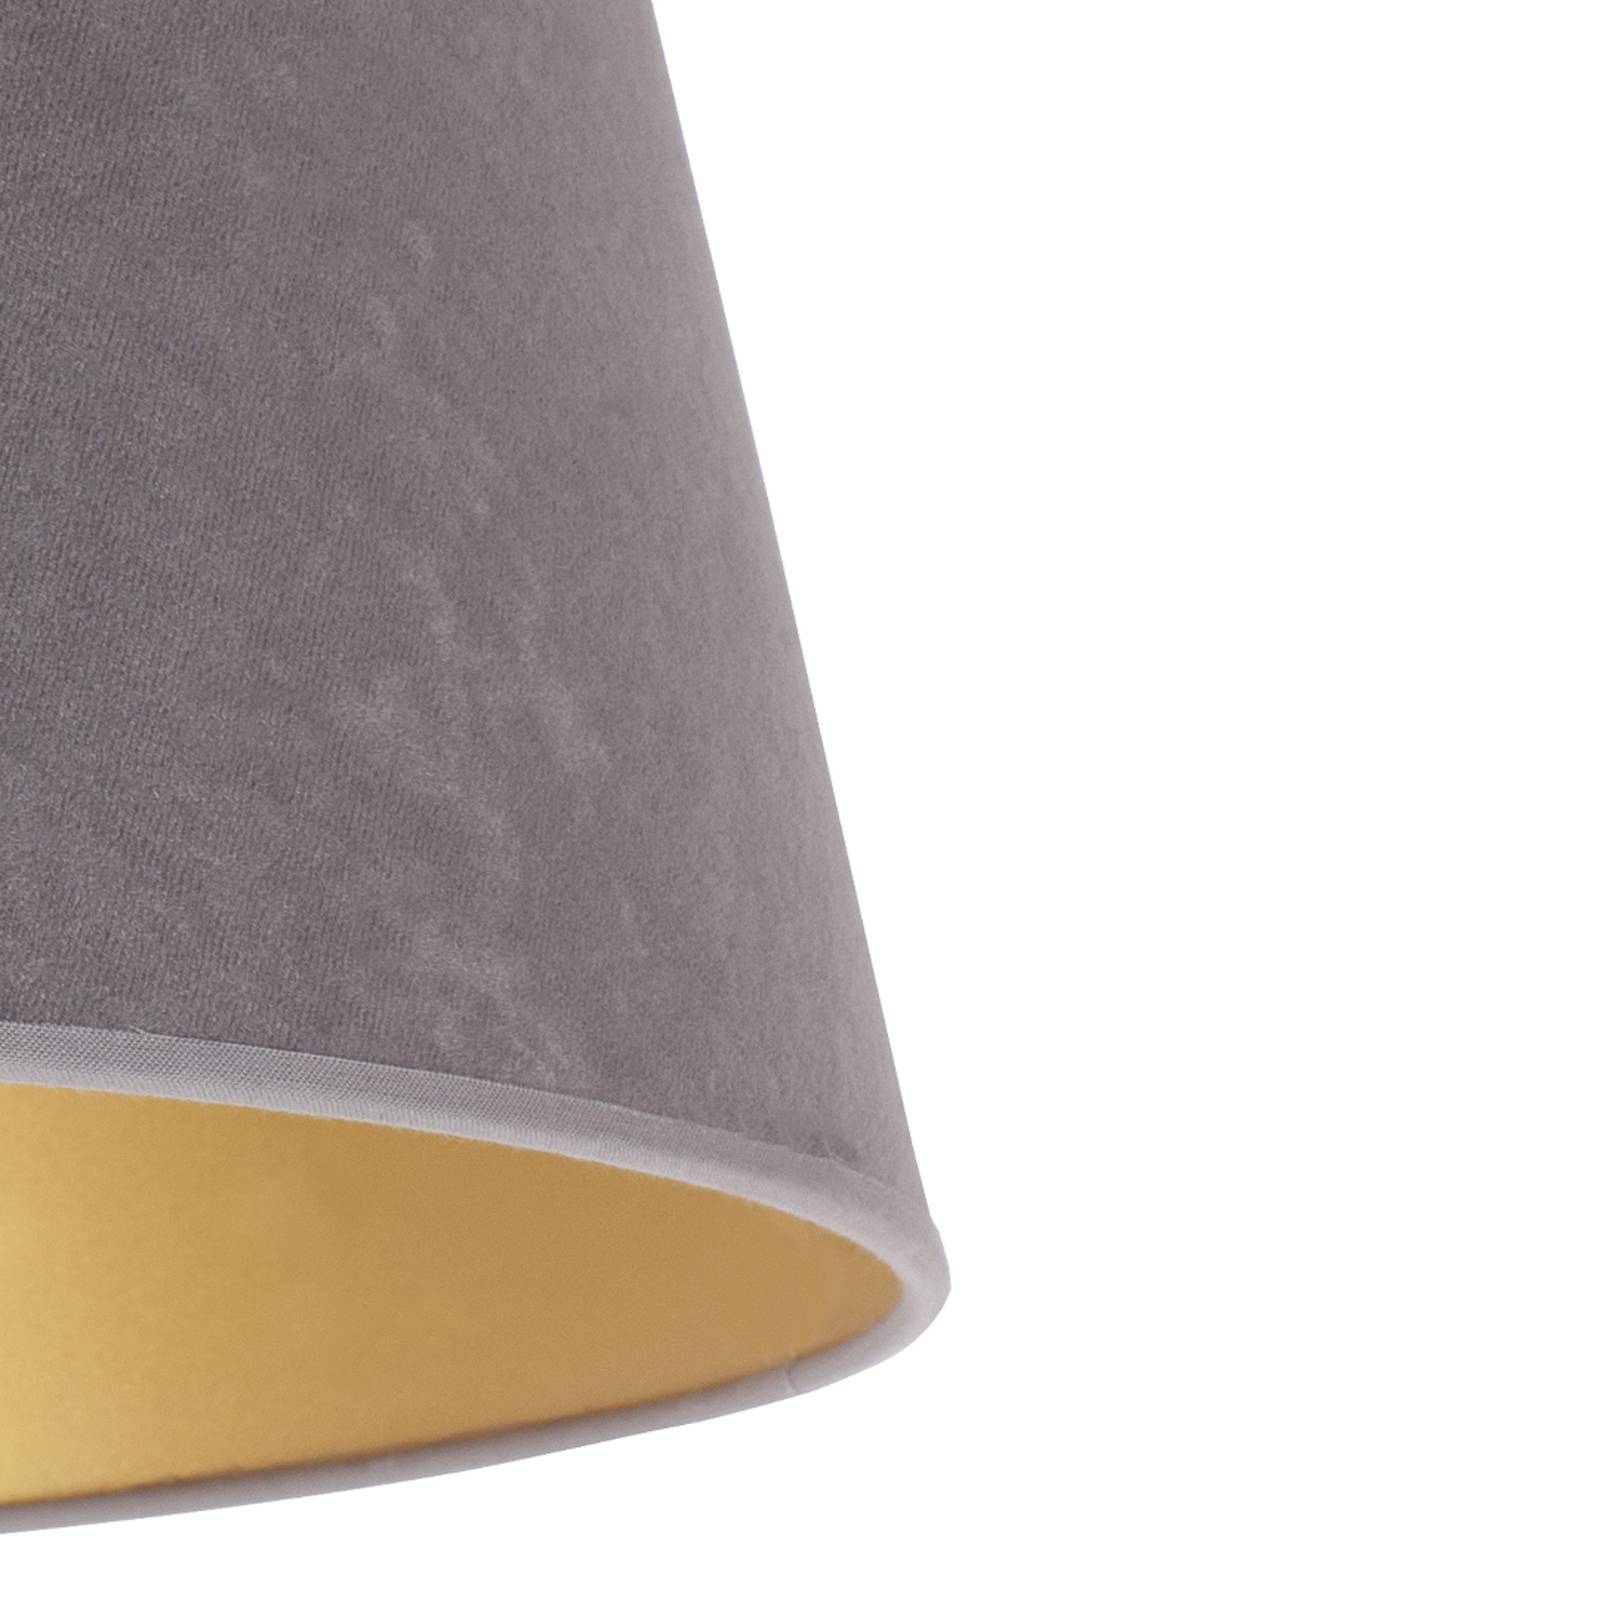 Cone lámpaernyő 22,5 cm magas, szürke/arany